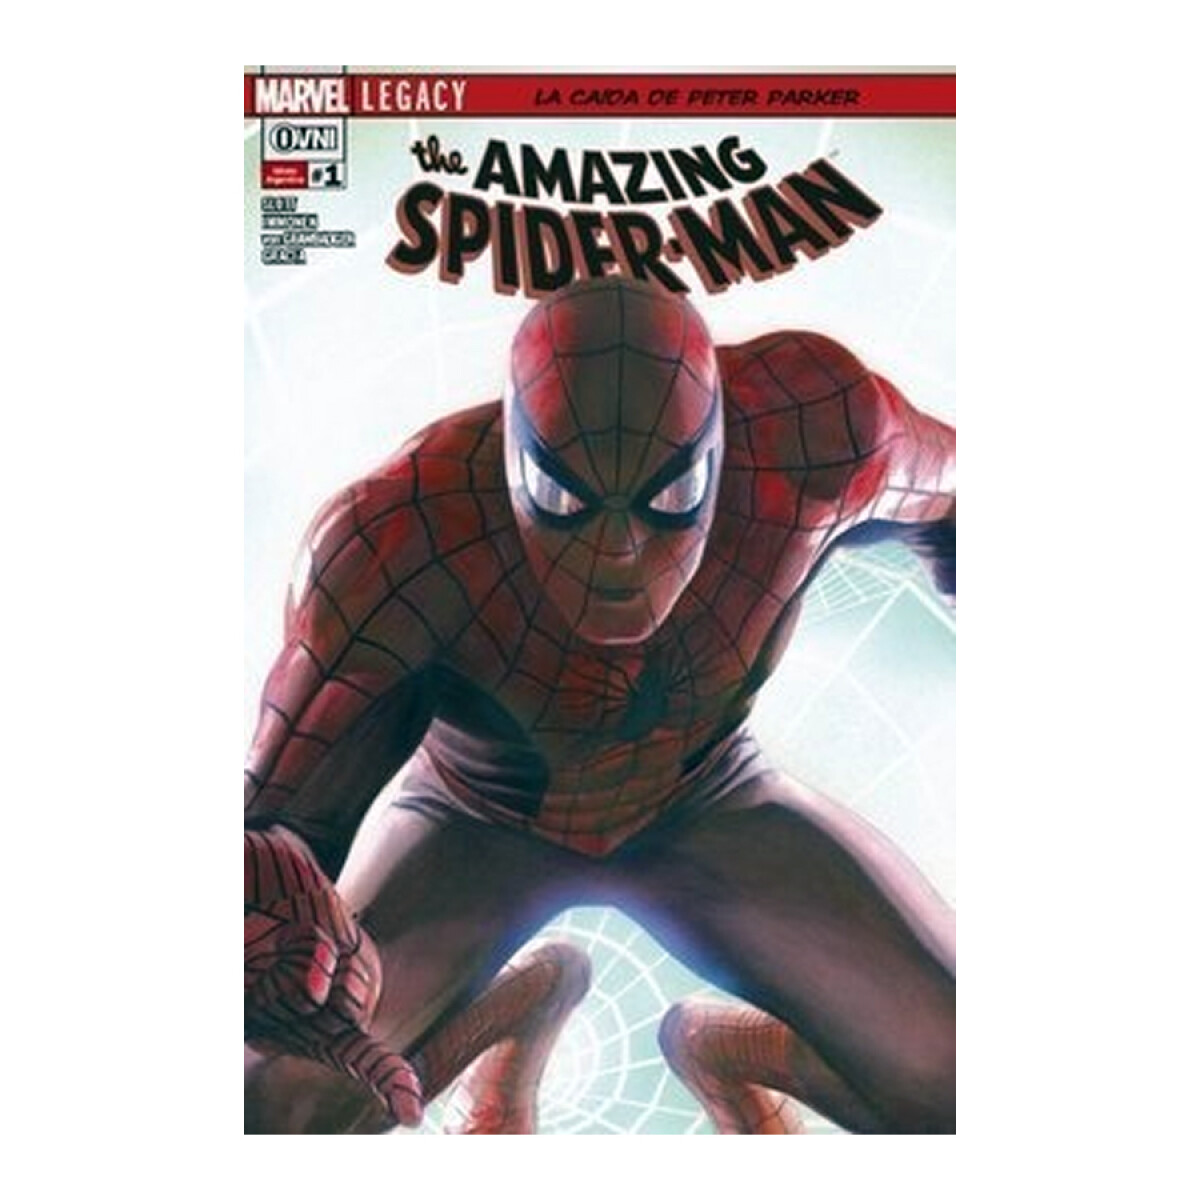 The Amazing Spiderman: La Caída de Peter Parker #1 